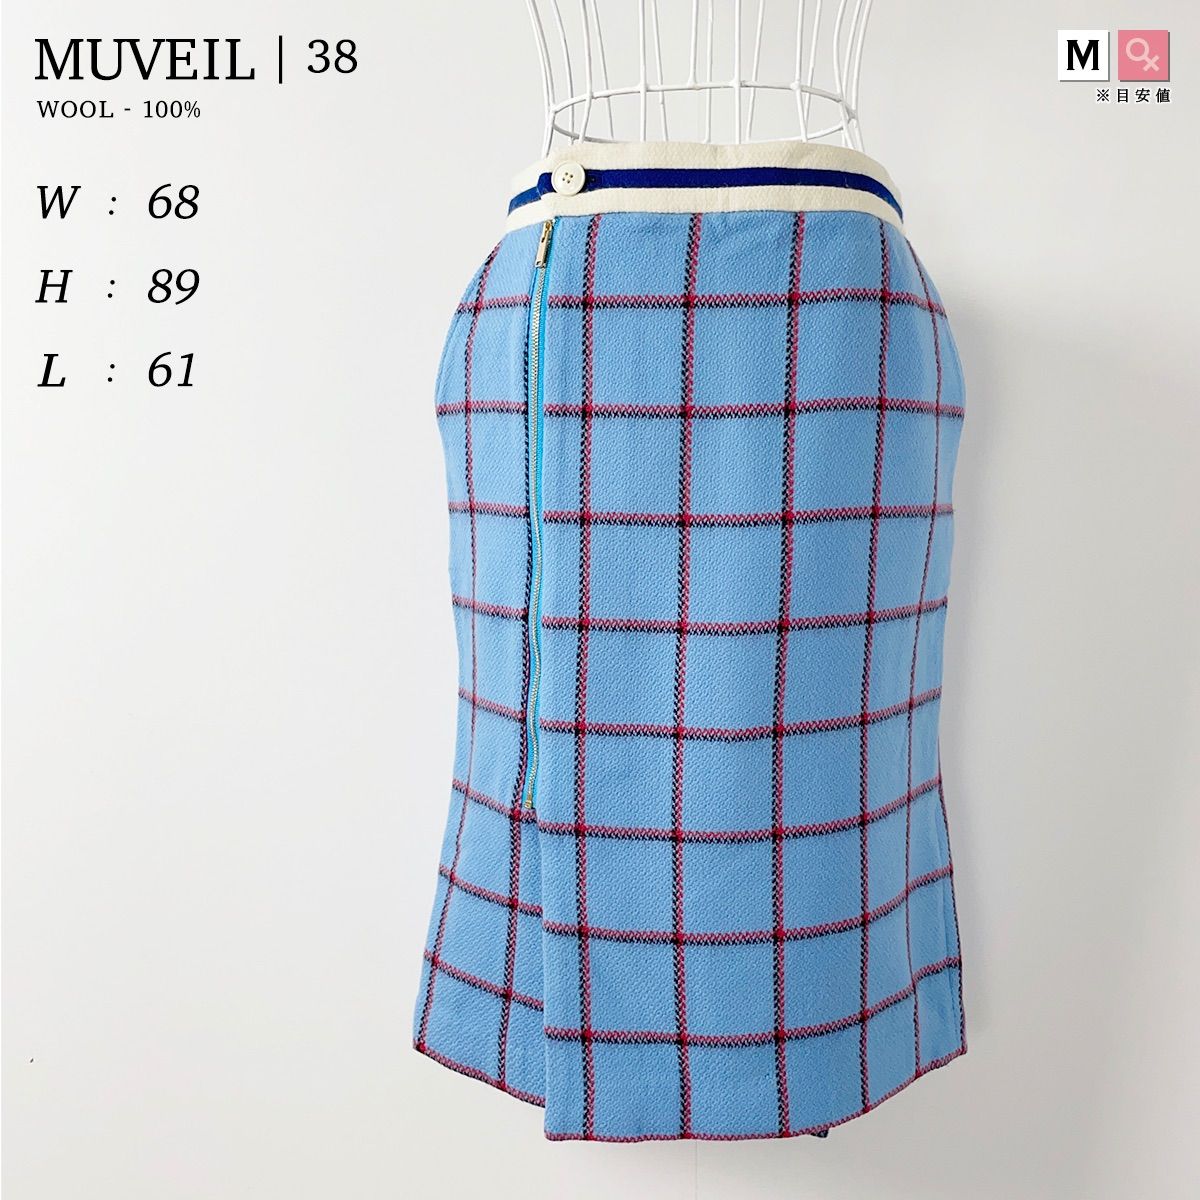 定形外発送送料無料商品 MUVEIL ミュベール ツイードスカート